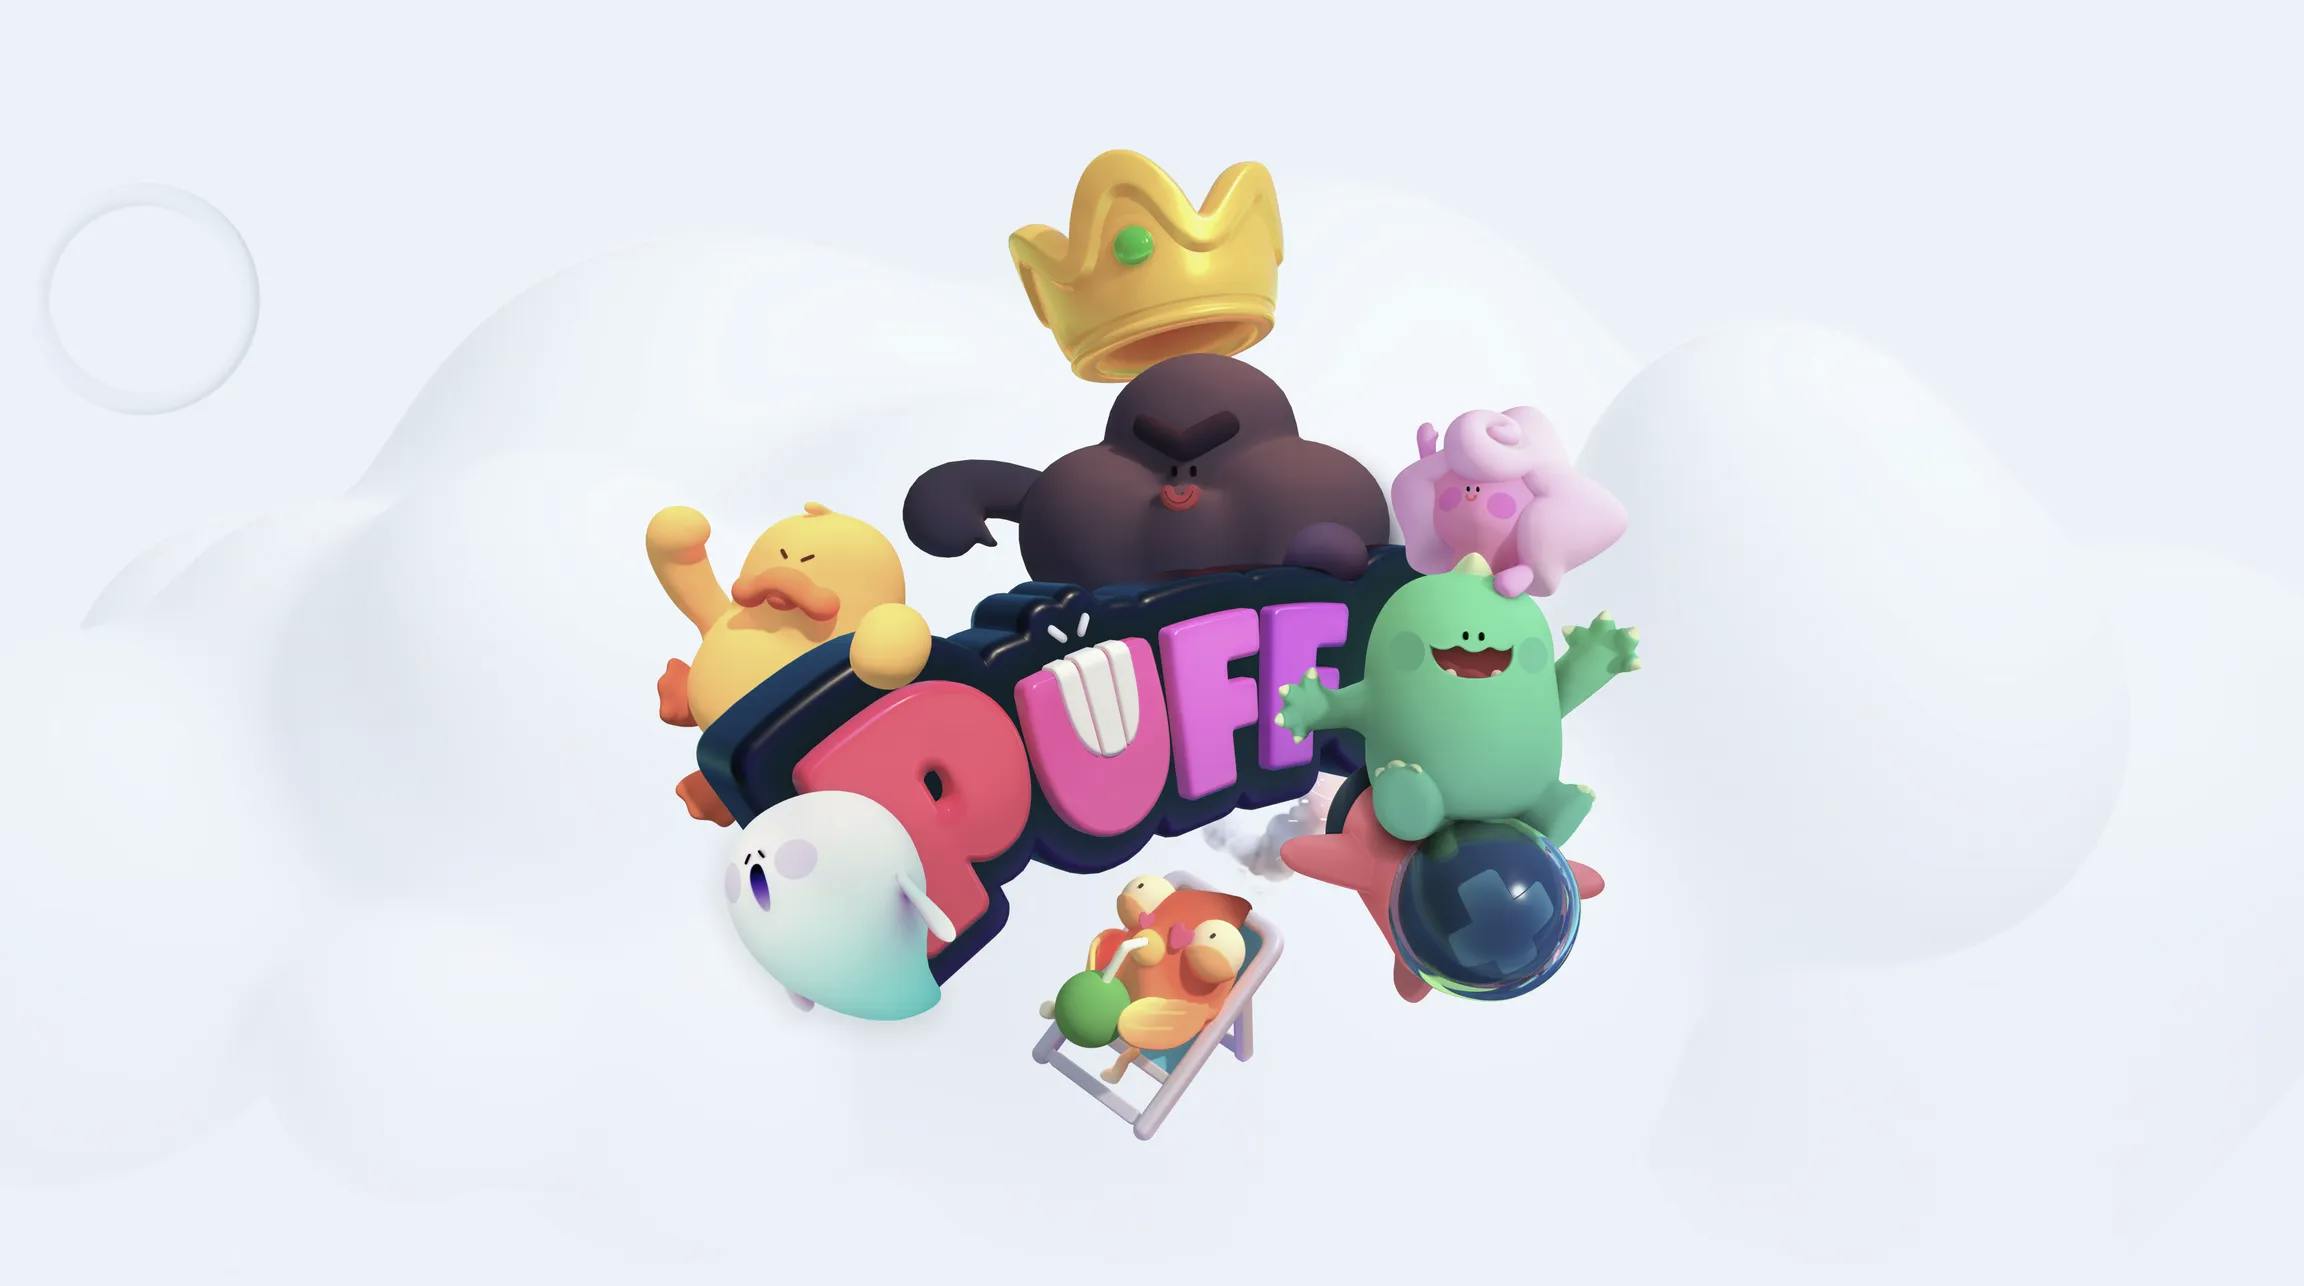 puffverse game image 1.webp